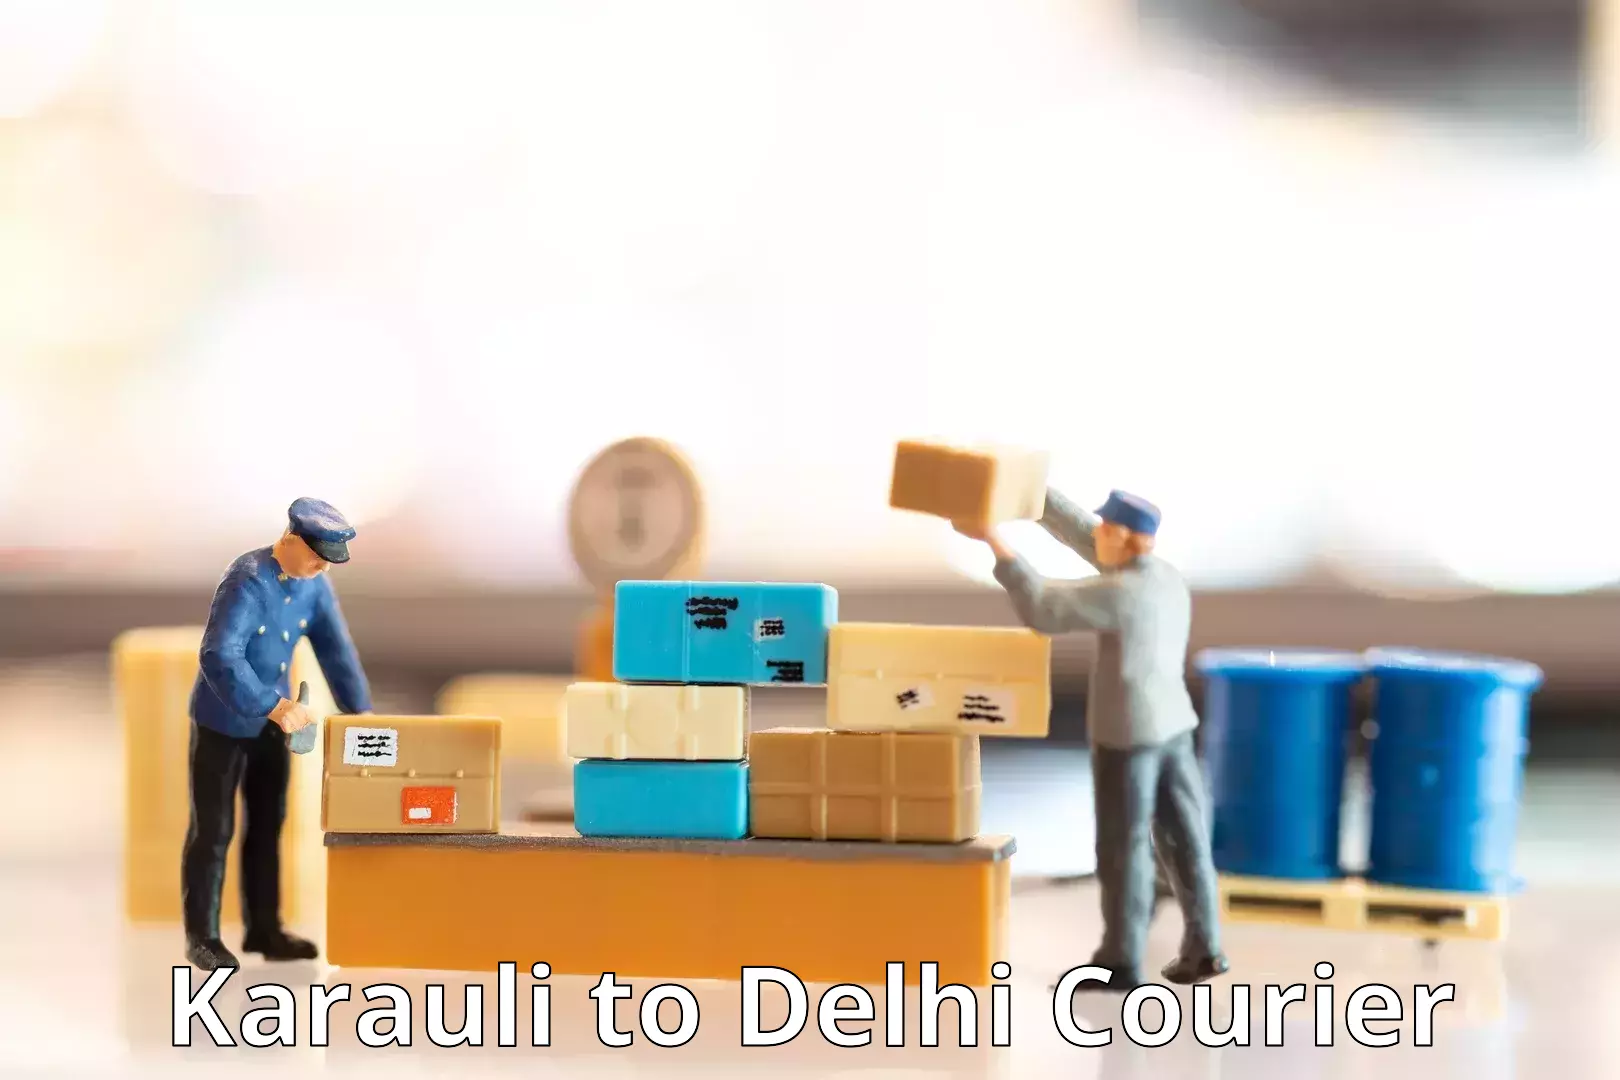 Efficient parcel tracking Karauli to Delhi